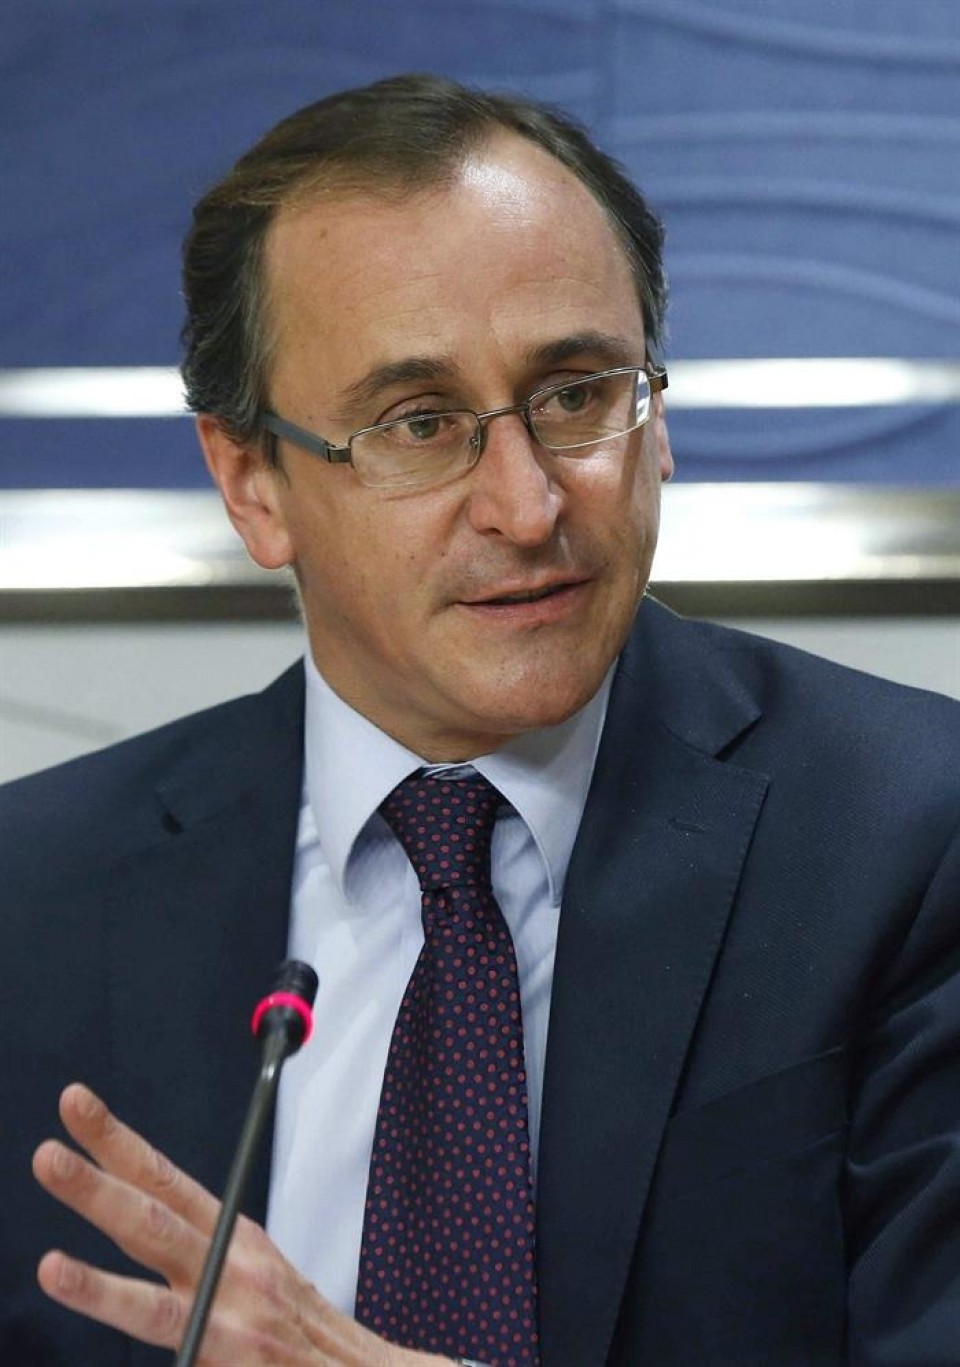 Alfonso Alonso Espainiako Osasun ministro eta Gasteizko alkate ohia. Artxiboko irudia: EFE